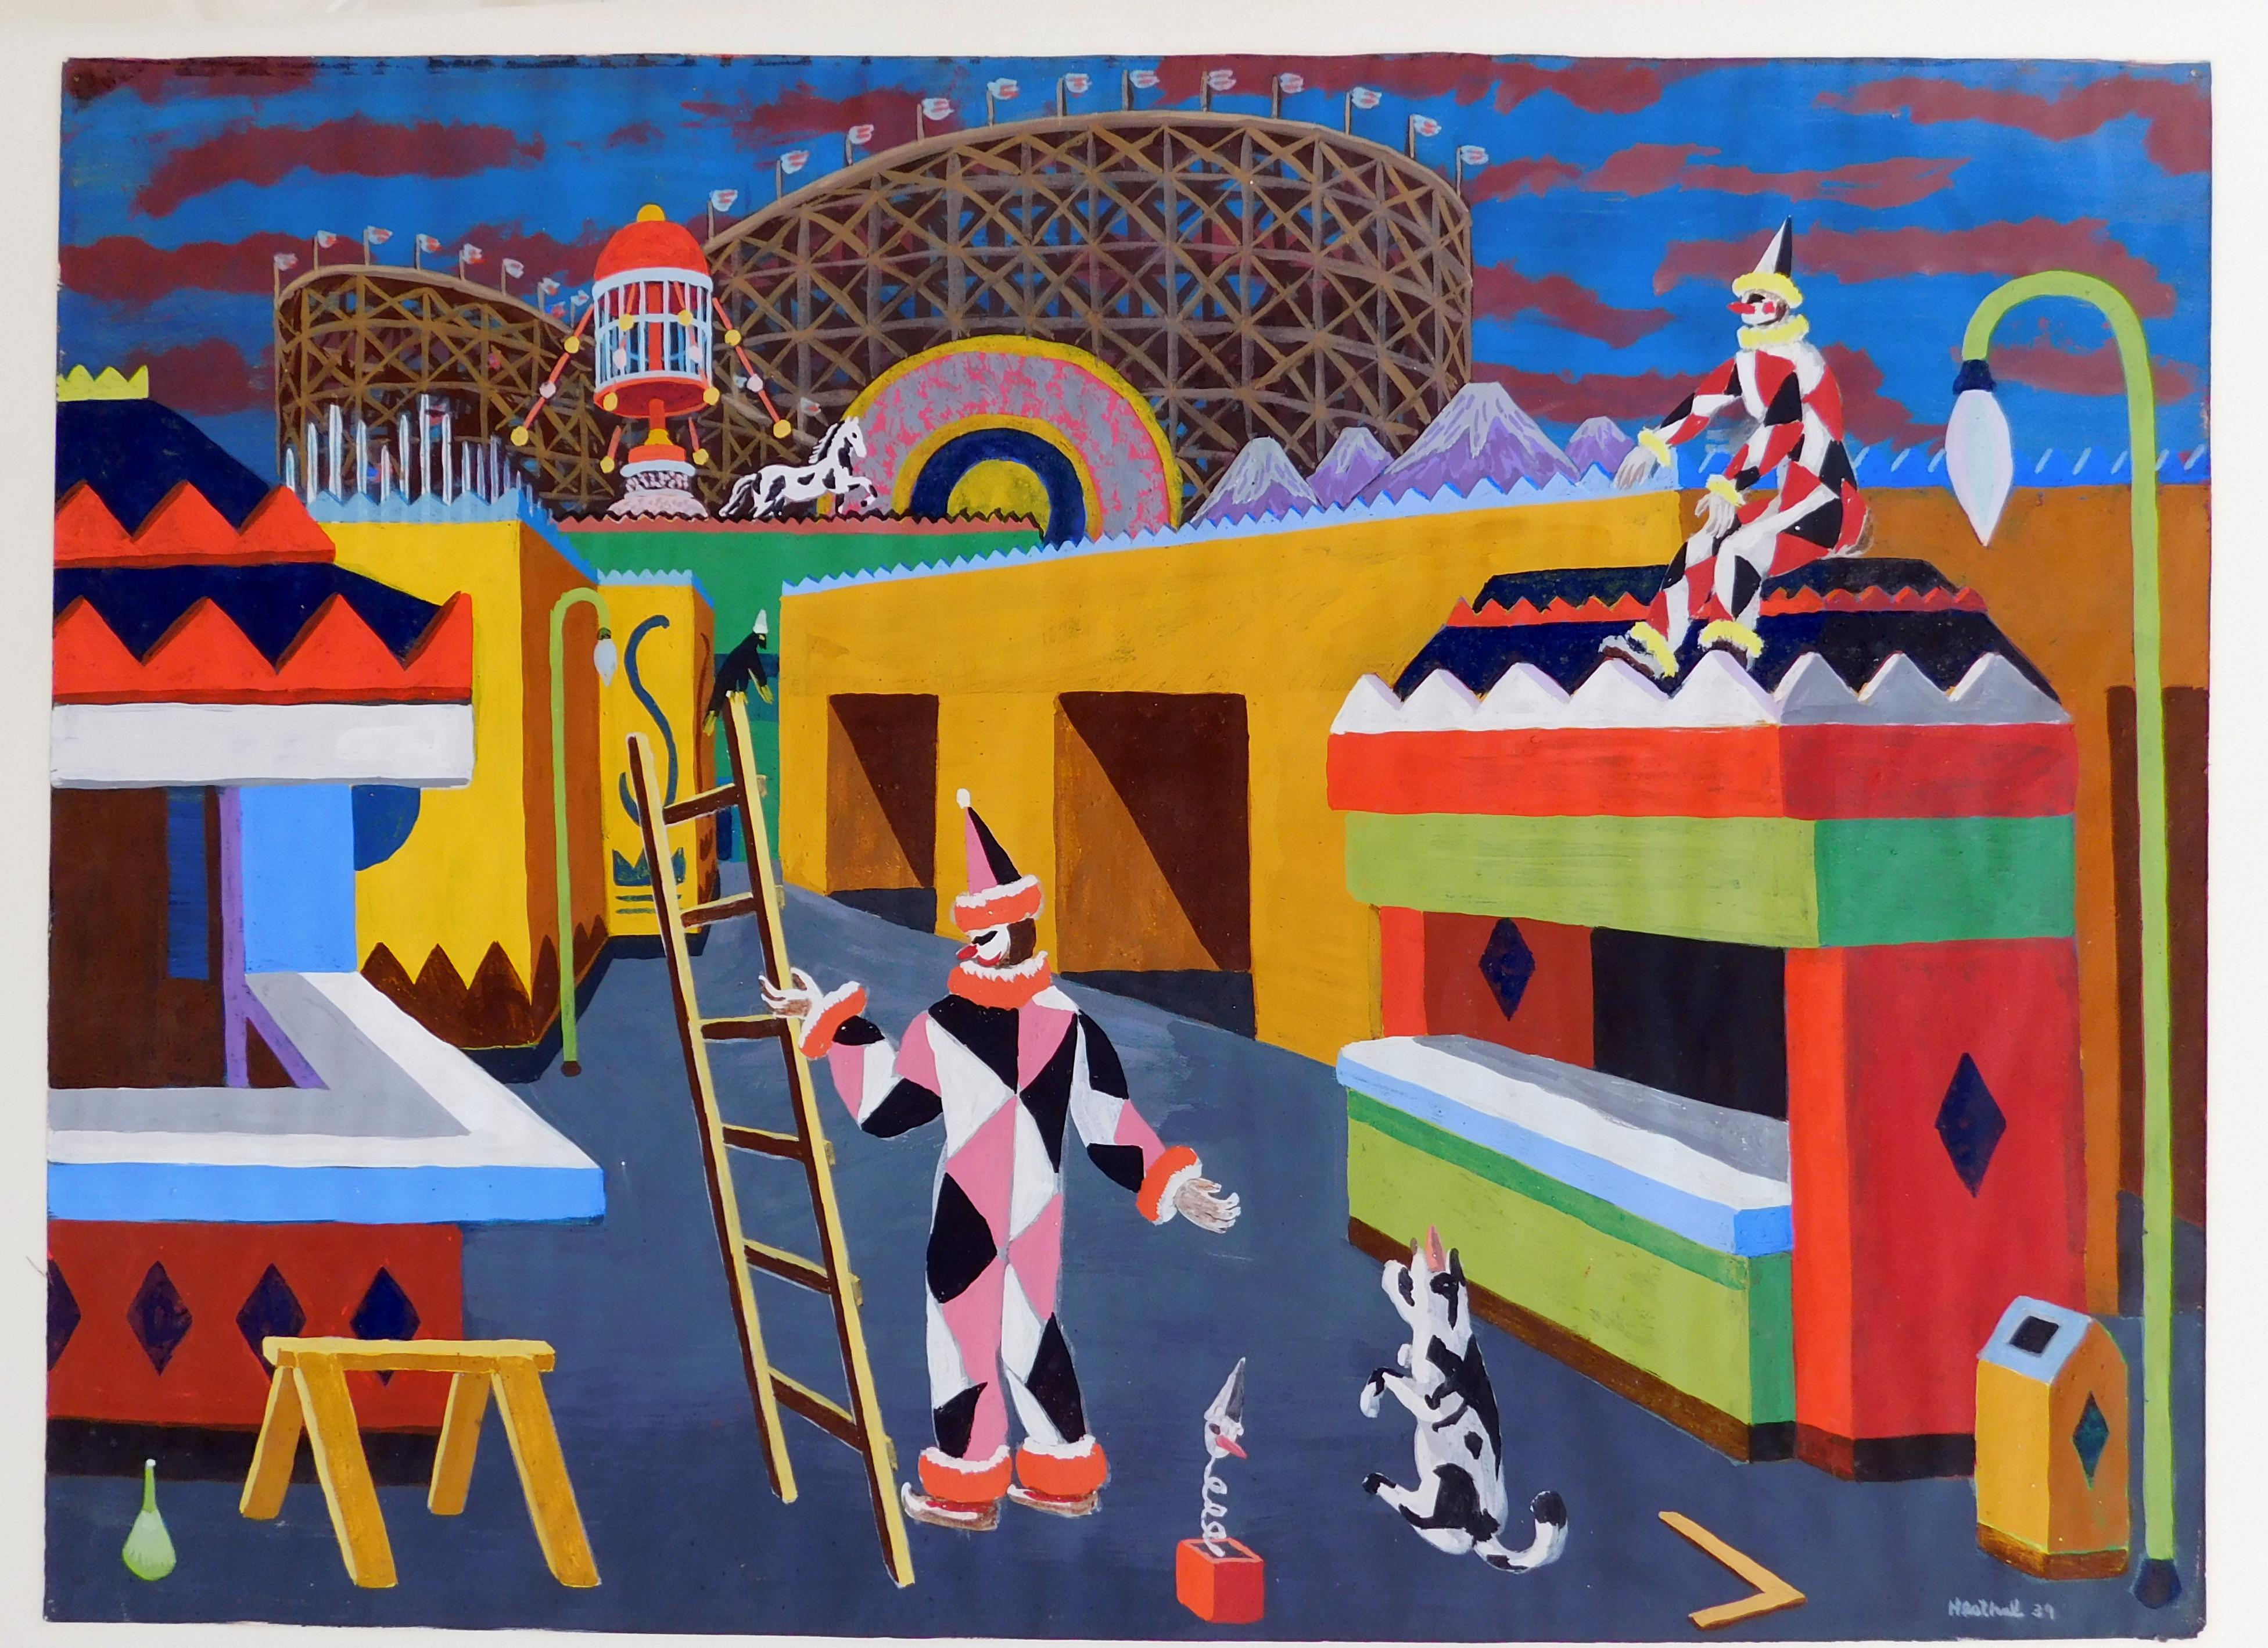 Willaim Hesthal Kalifornien Künstler original Aquarell. Surreale und skurrile Zirkusszene mit Clowns.
Signiert unten rechts 